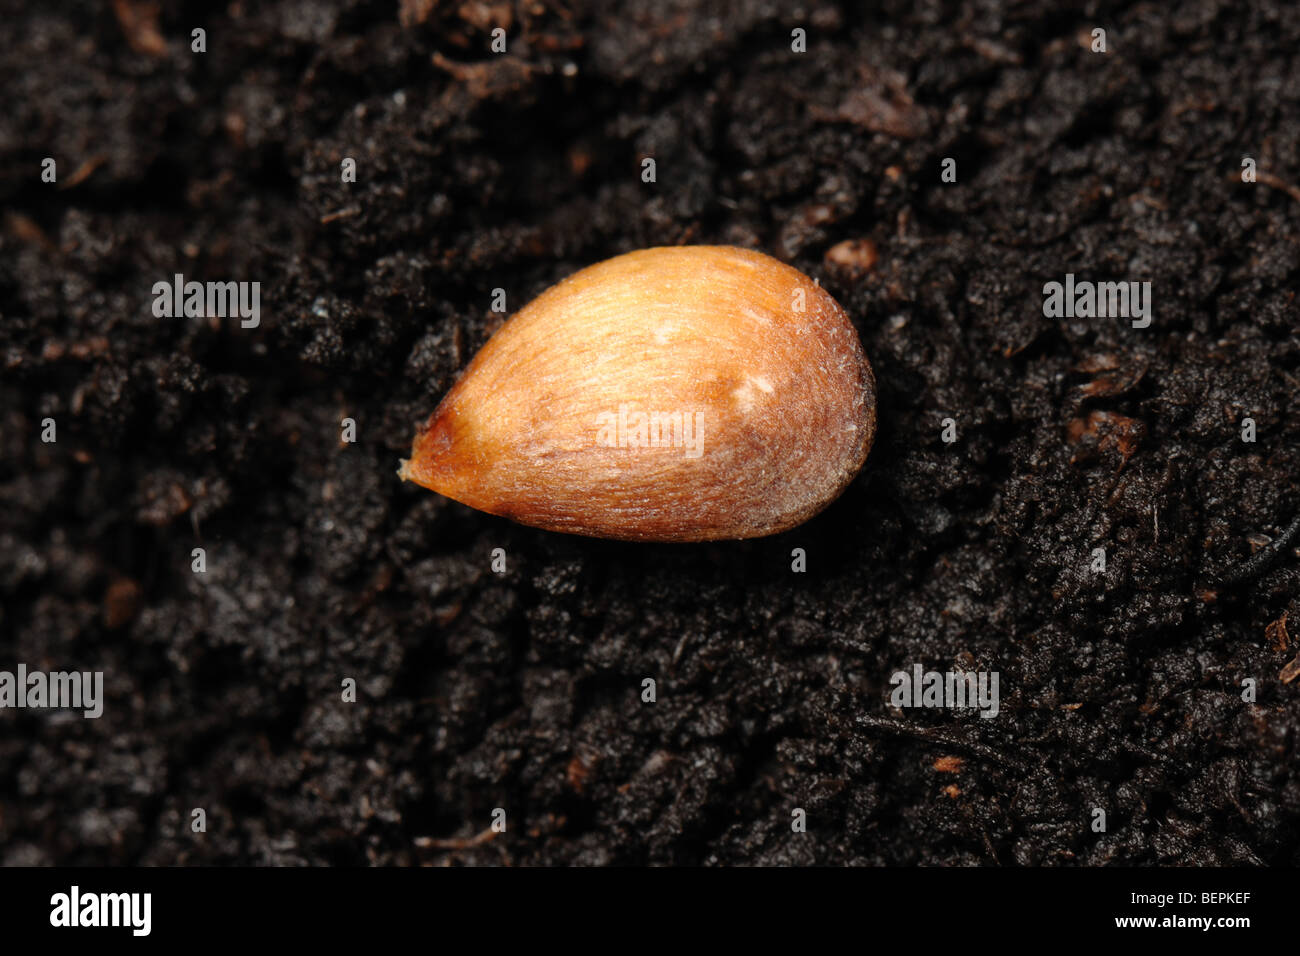 Descubrimiento de semillas de manzana en una superficie de suelo Foto de stock